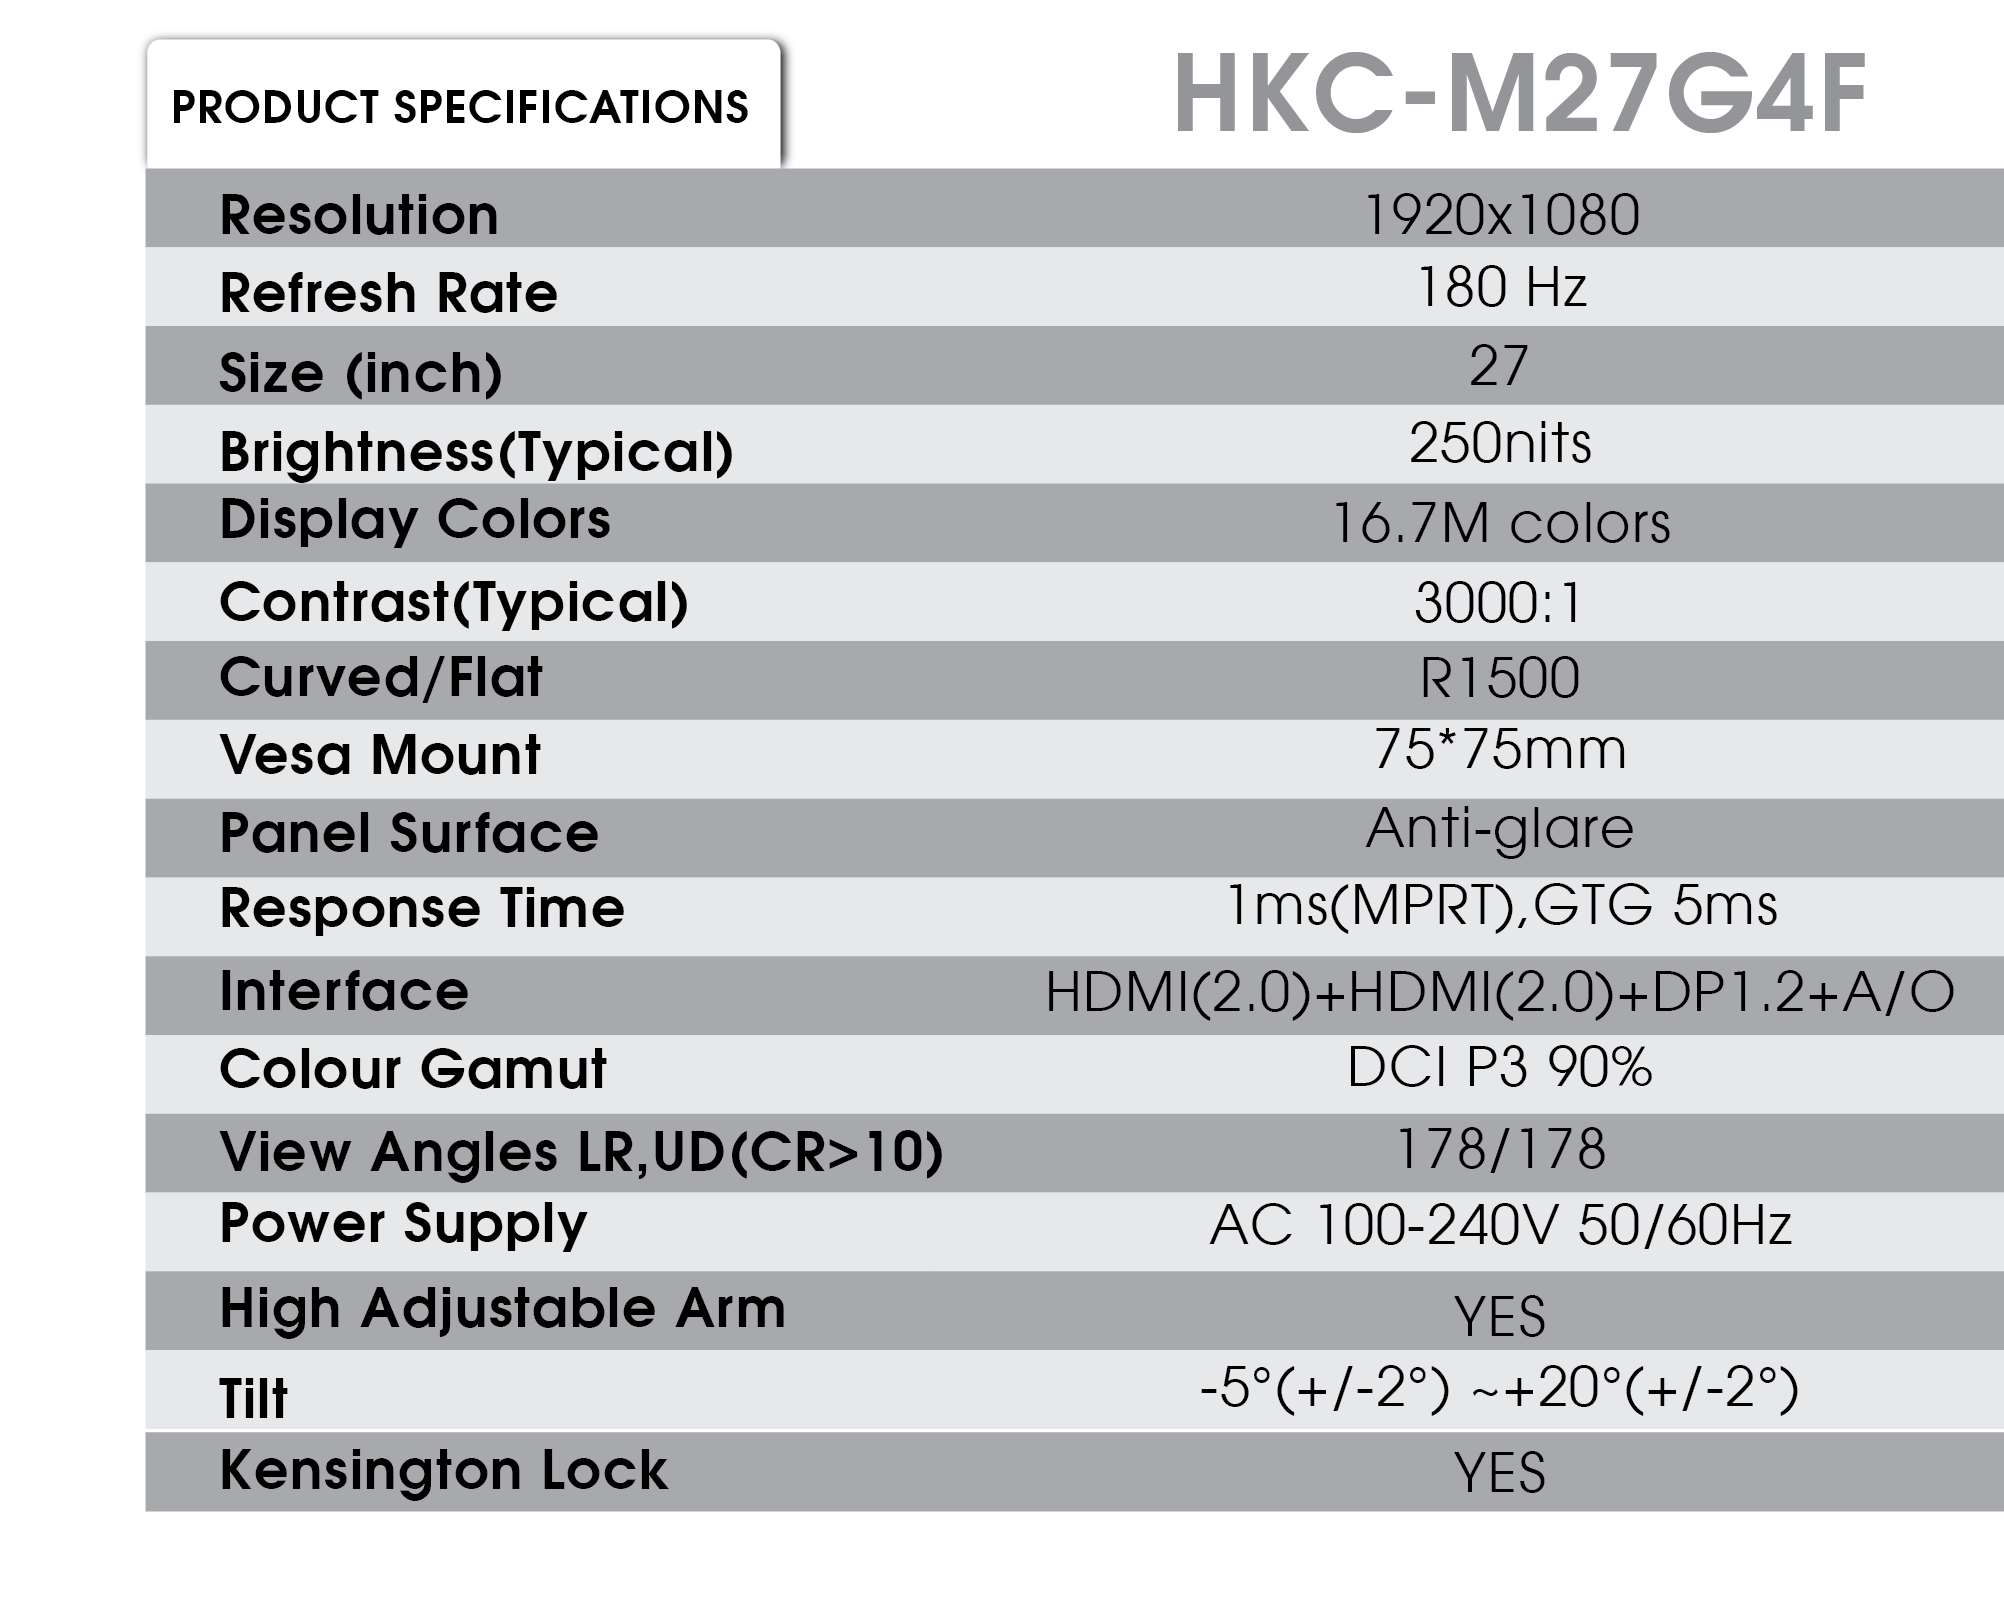 HKC-M27G4F